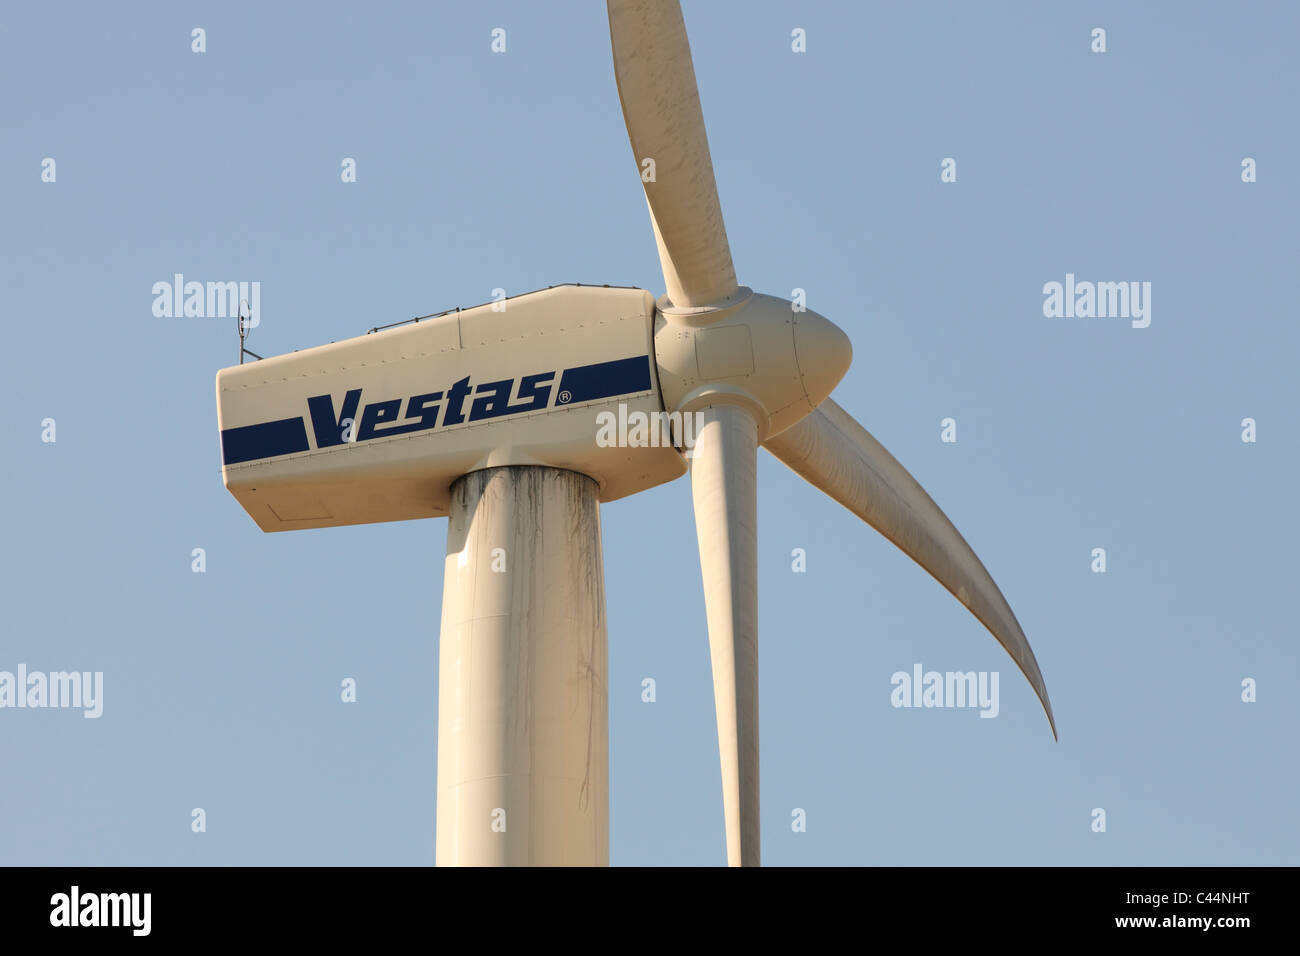 Vestas wind turbine Stock Photo - Alamy